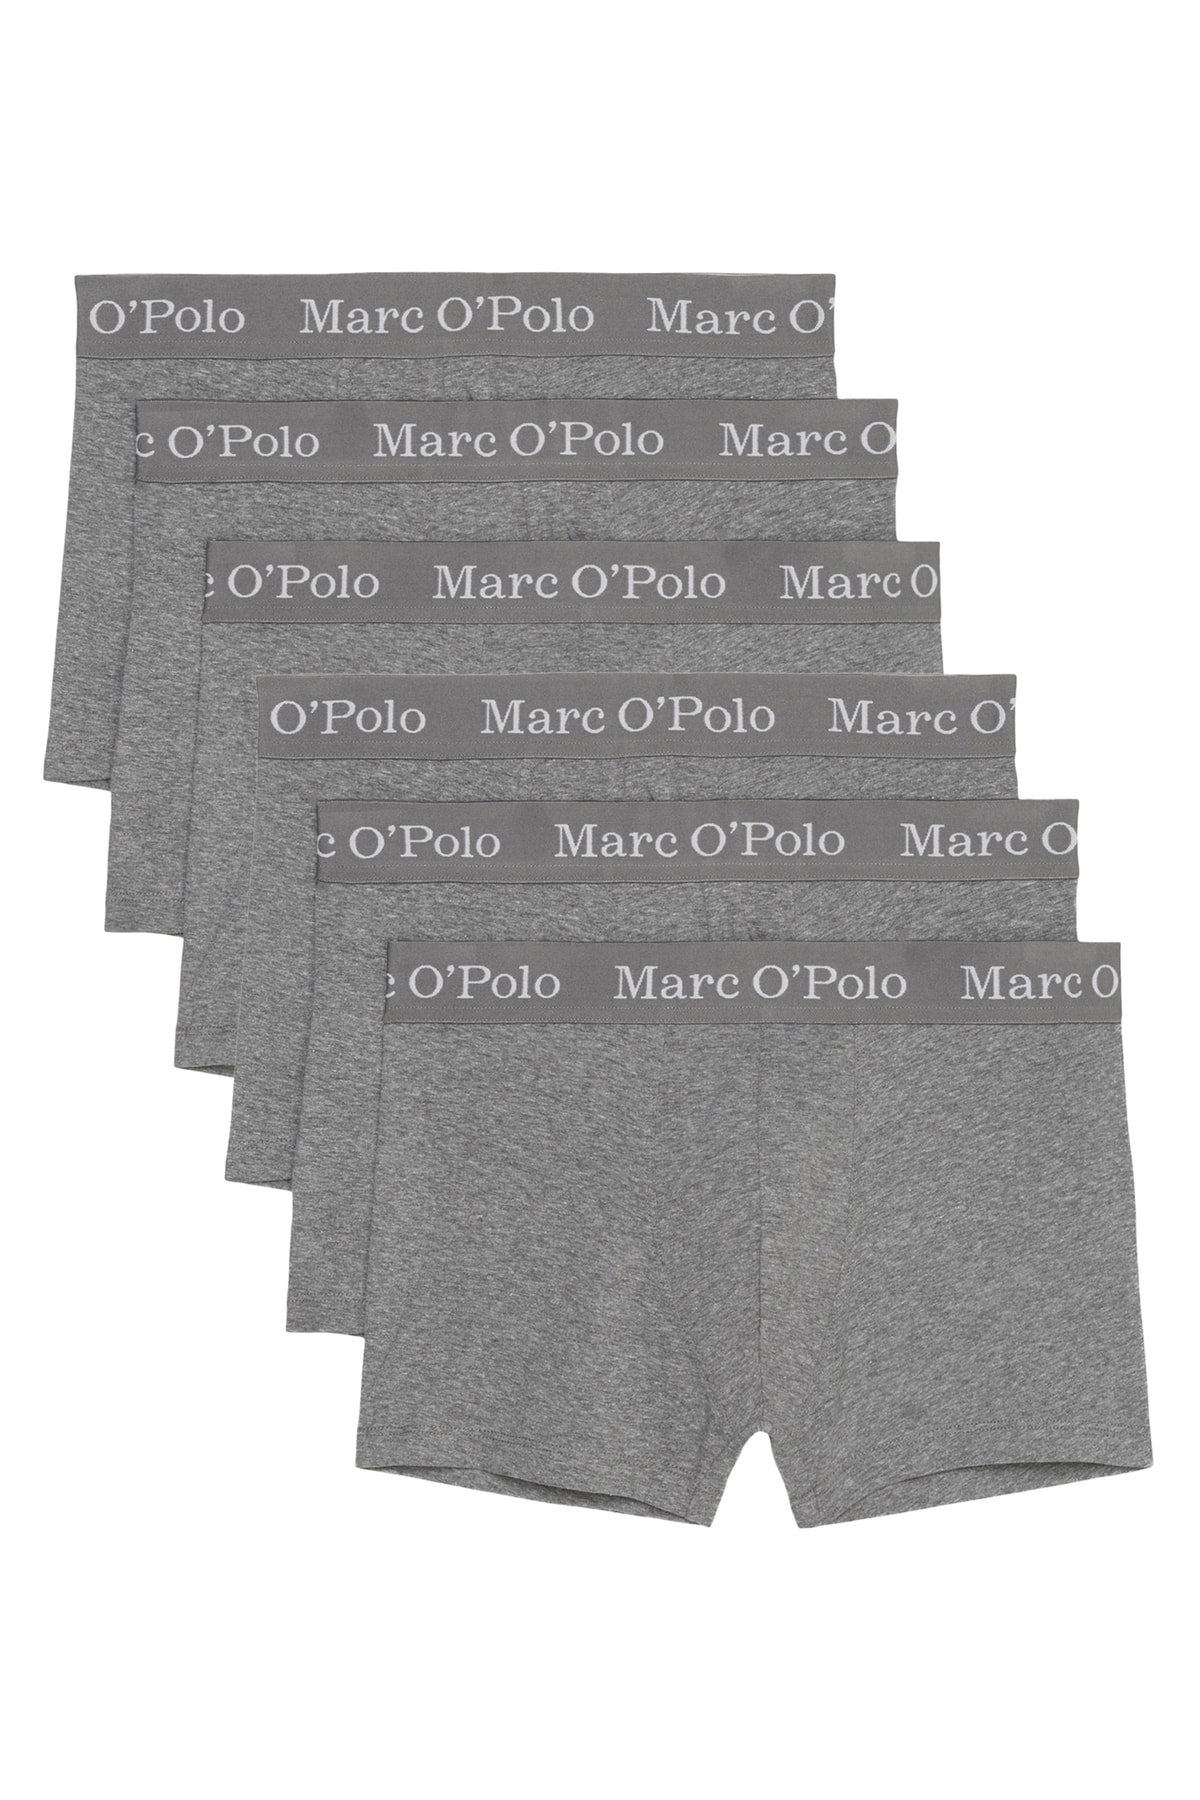 Marc O'Polo Body & Beach Boxershorts Grau 6er-Pack Fast ausverkauft